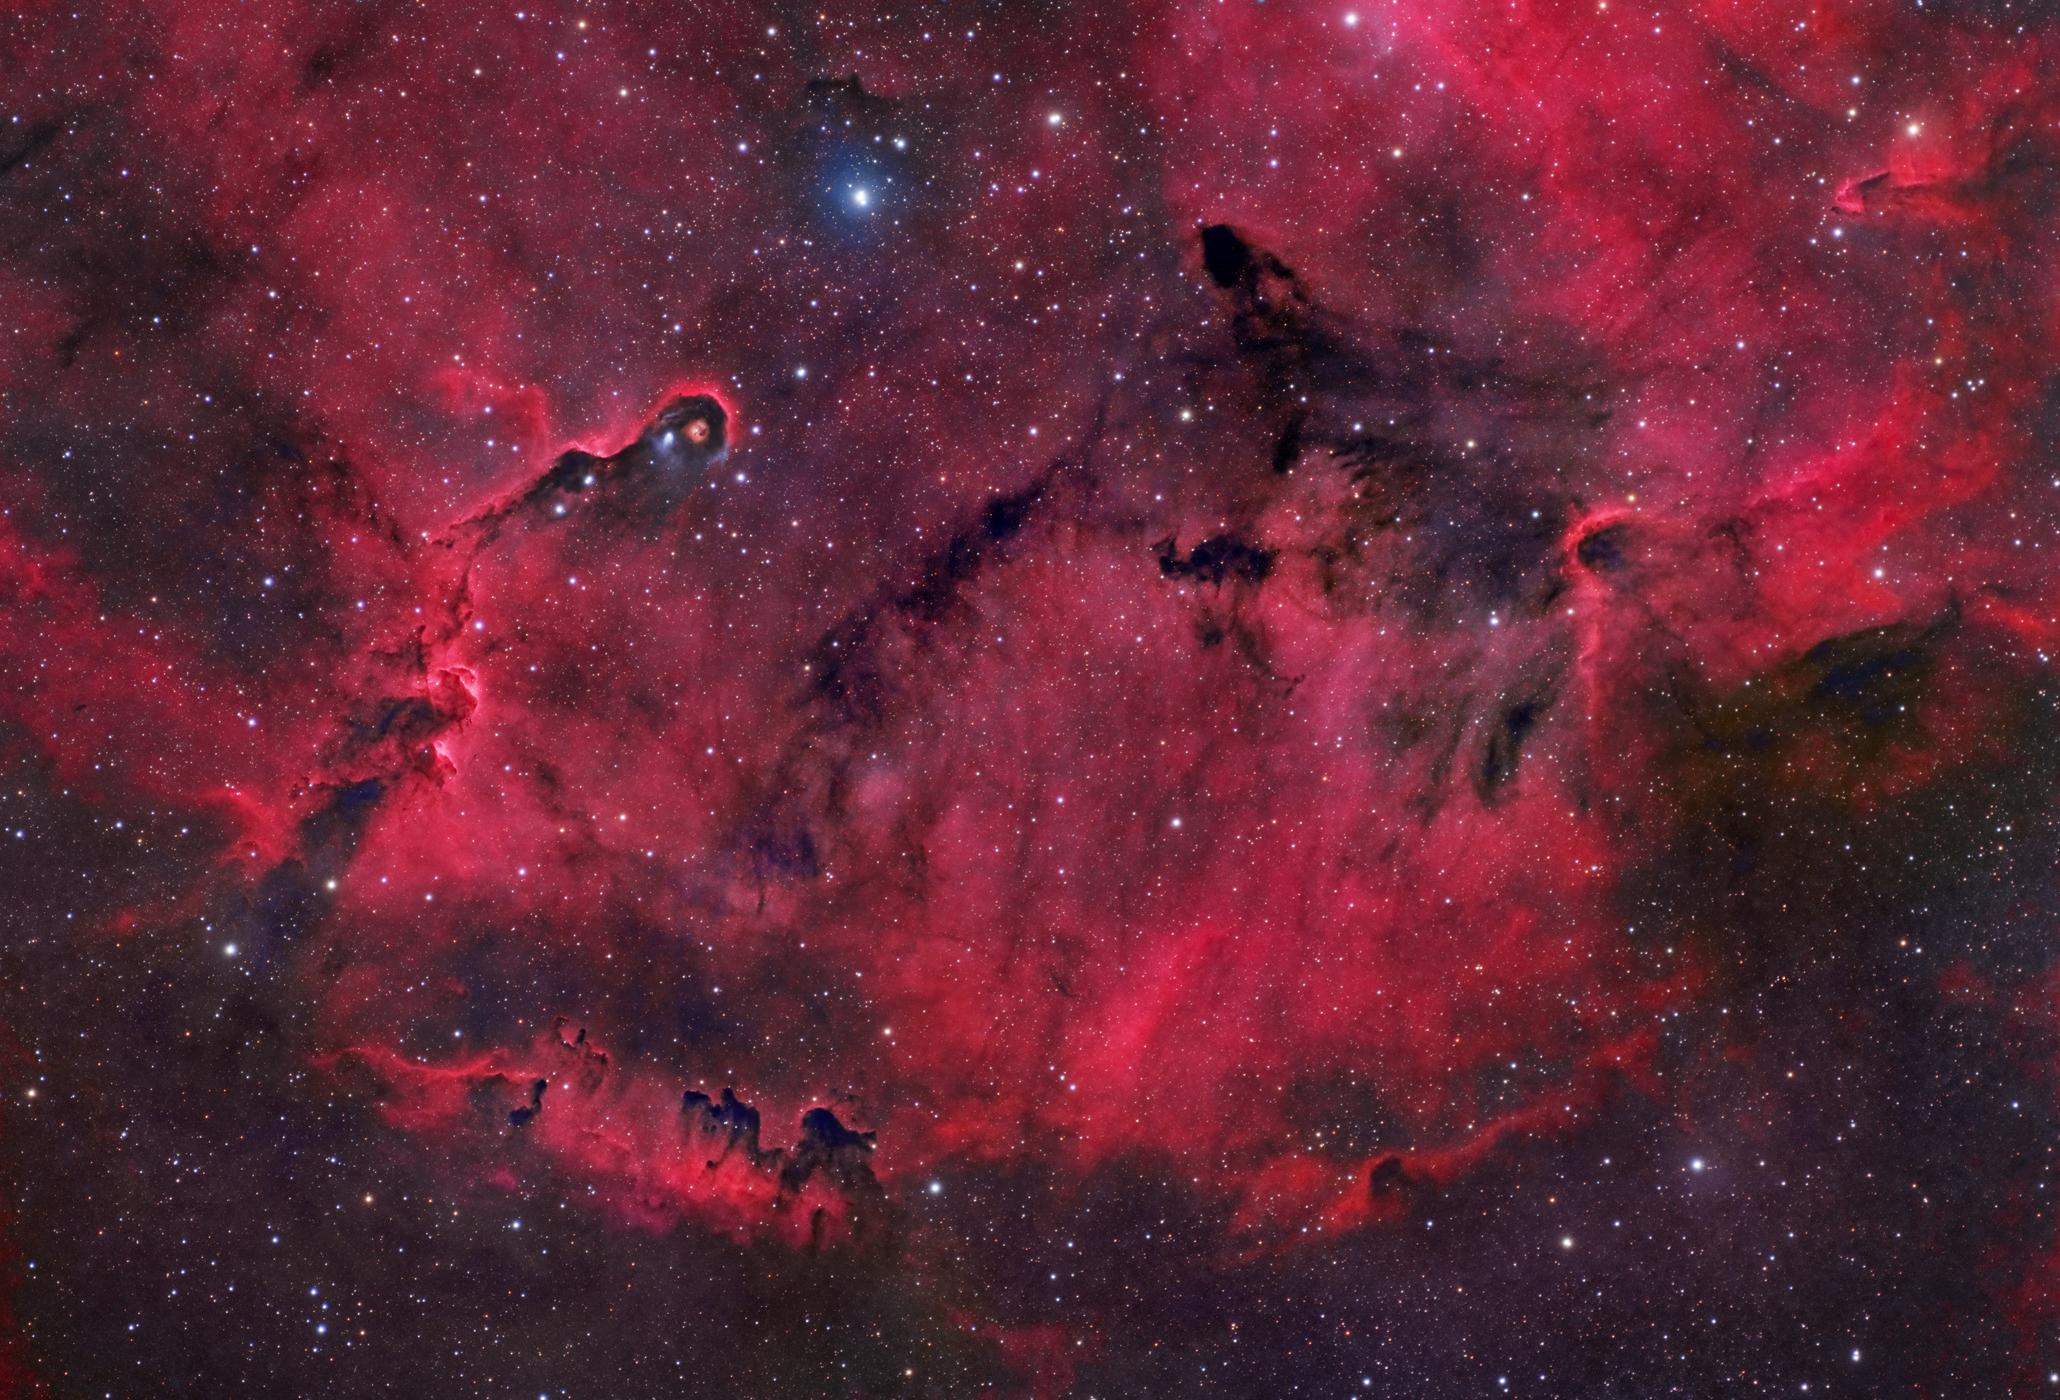 سديم يظهر بلون محمرّ مع وجود مناطق داكنة ونجوم عبر الصورة